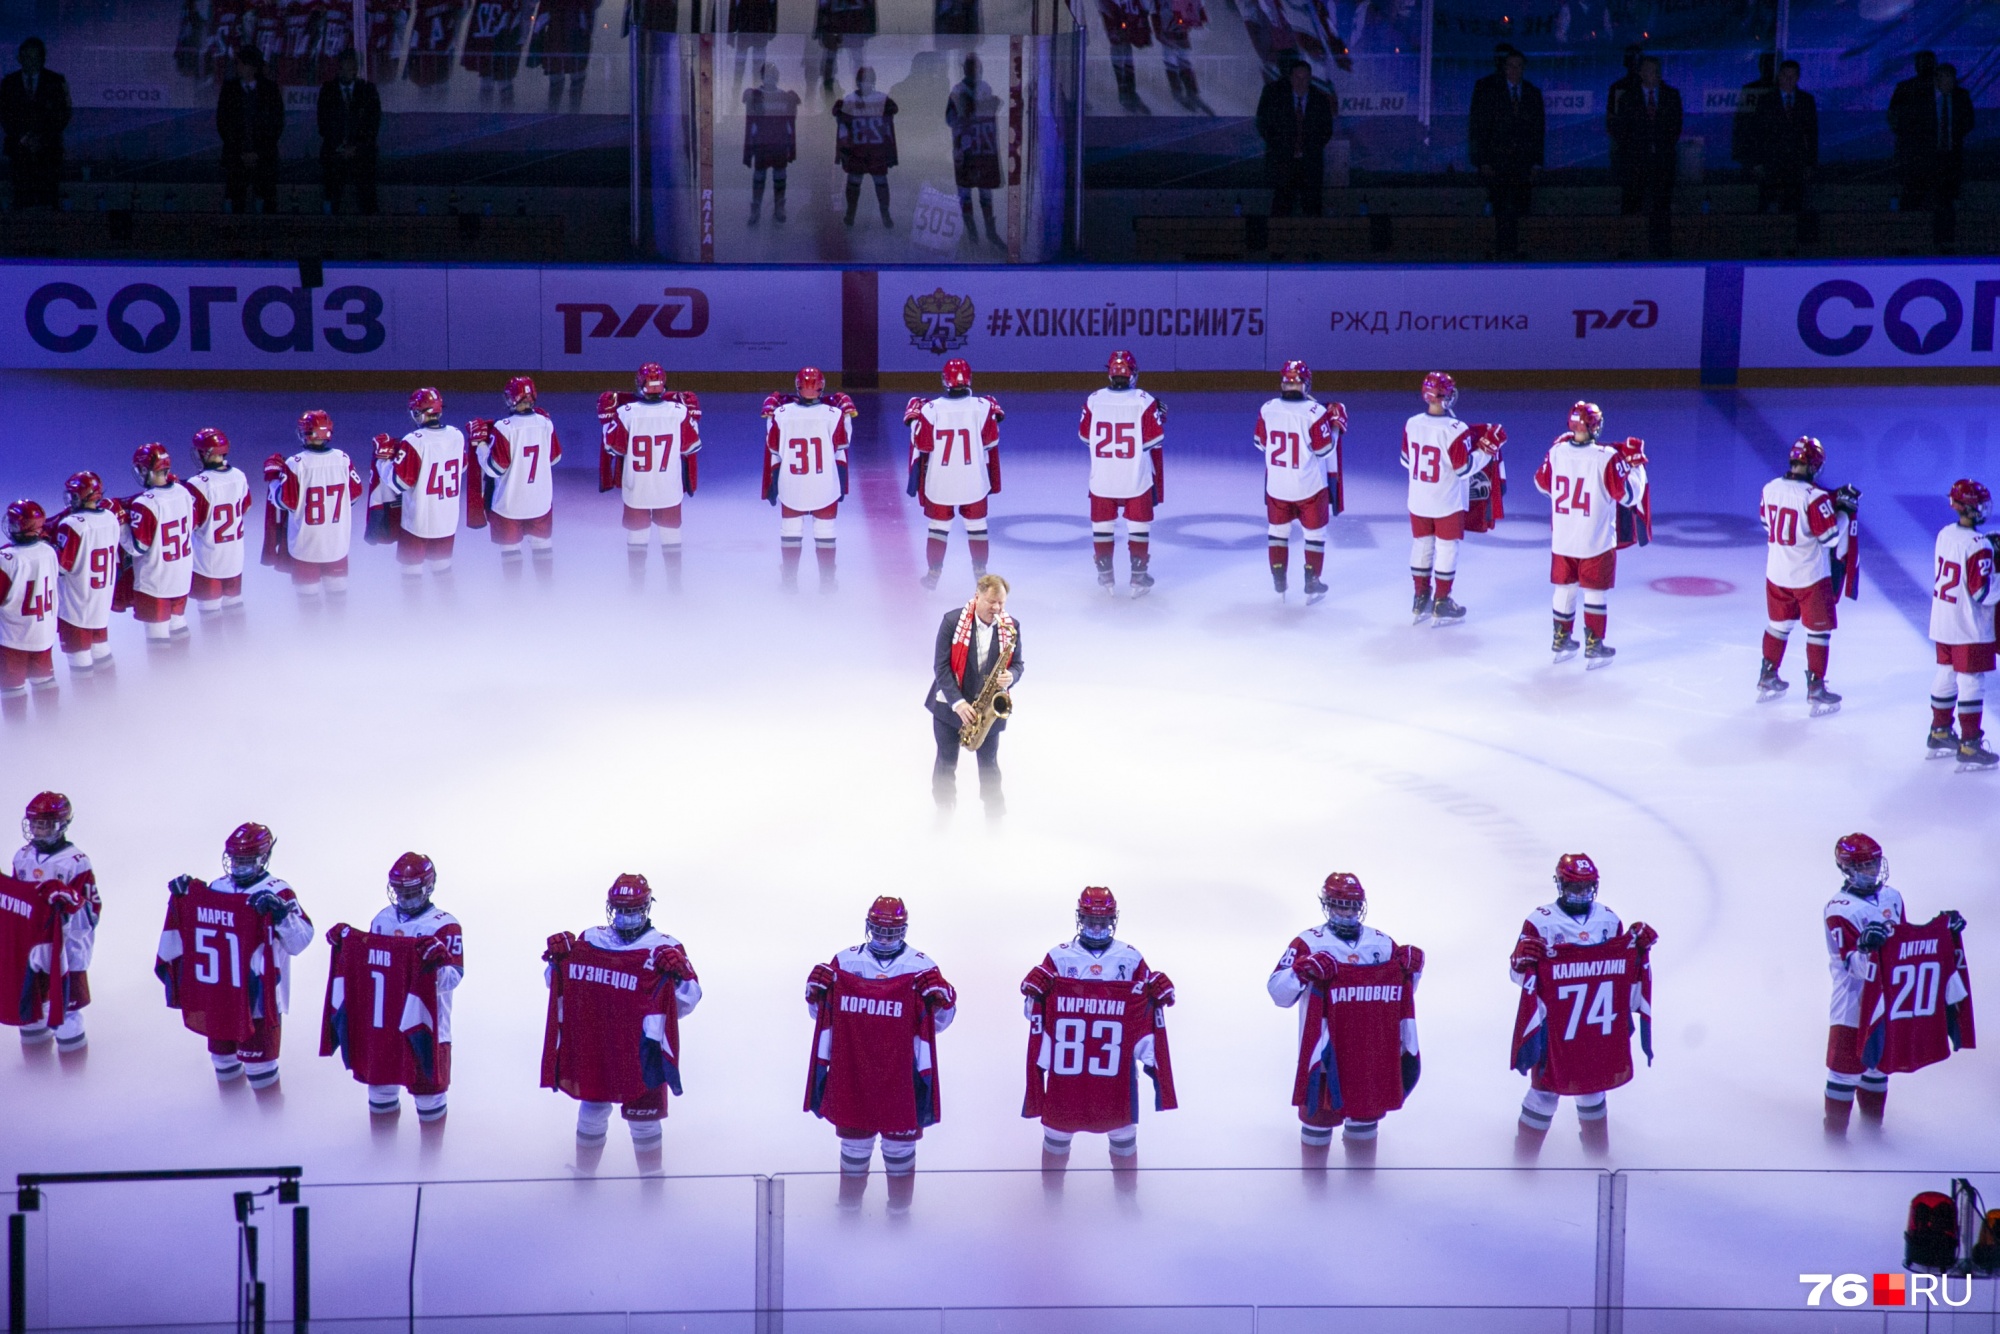 Впервые за 10 лет «Локомотив» провел матч 7 сентября. Перед игрой на льду прошла памятная церемония